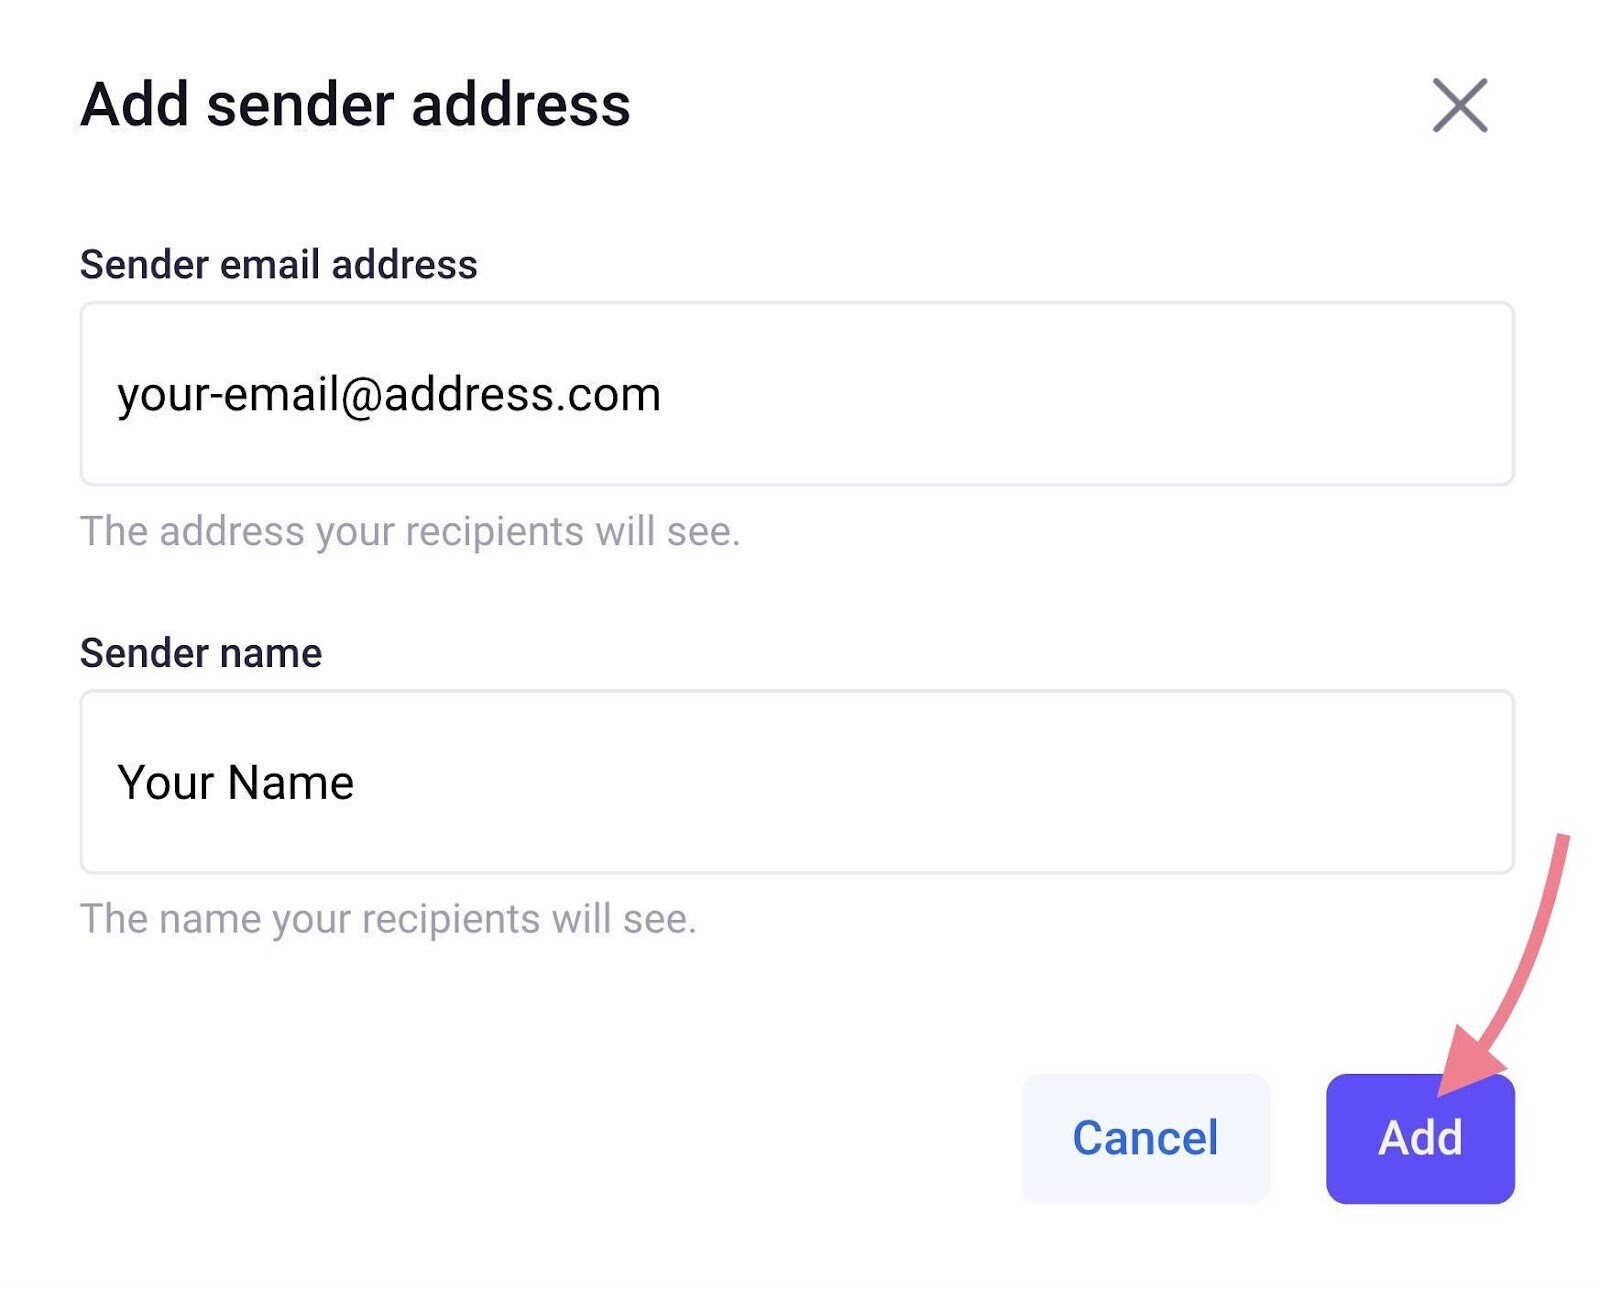 Add sender address page